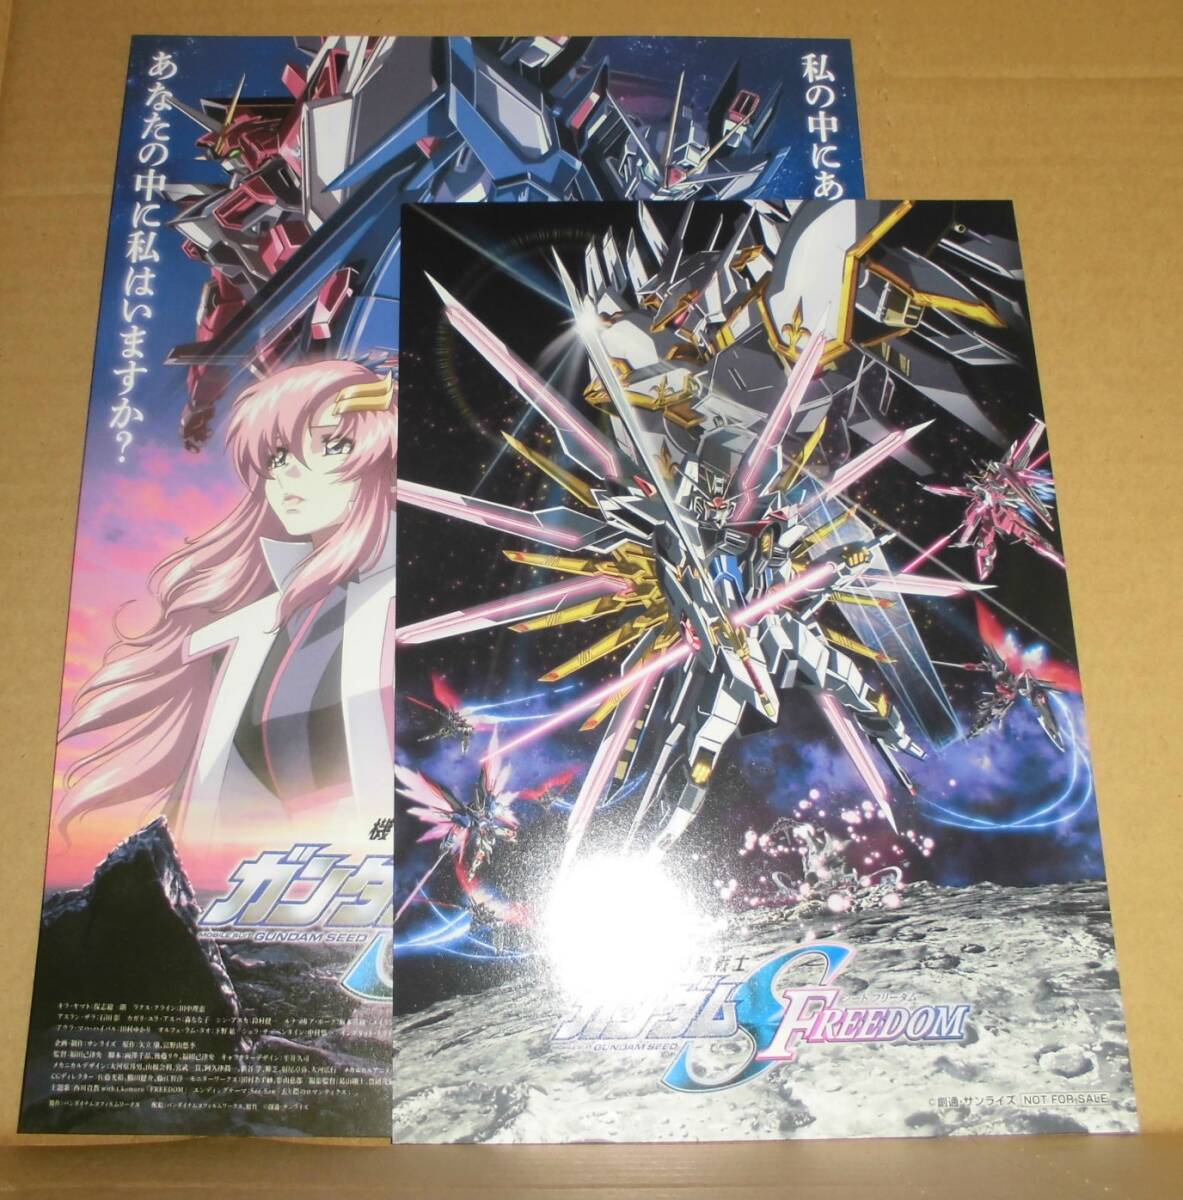 Театральная версия мобильного костюма Gundam Feeder Freedom 14 -я неделя посетителей Преимущества "вторая ключевая карта визуальной иллюстрации" и рекламный фильм семян